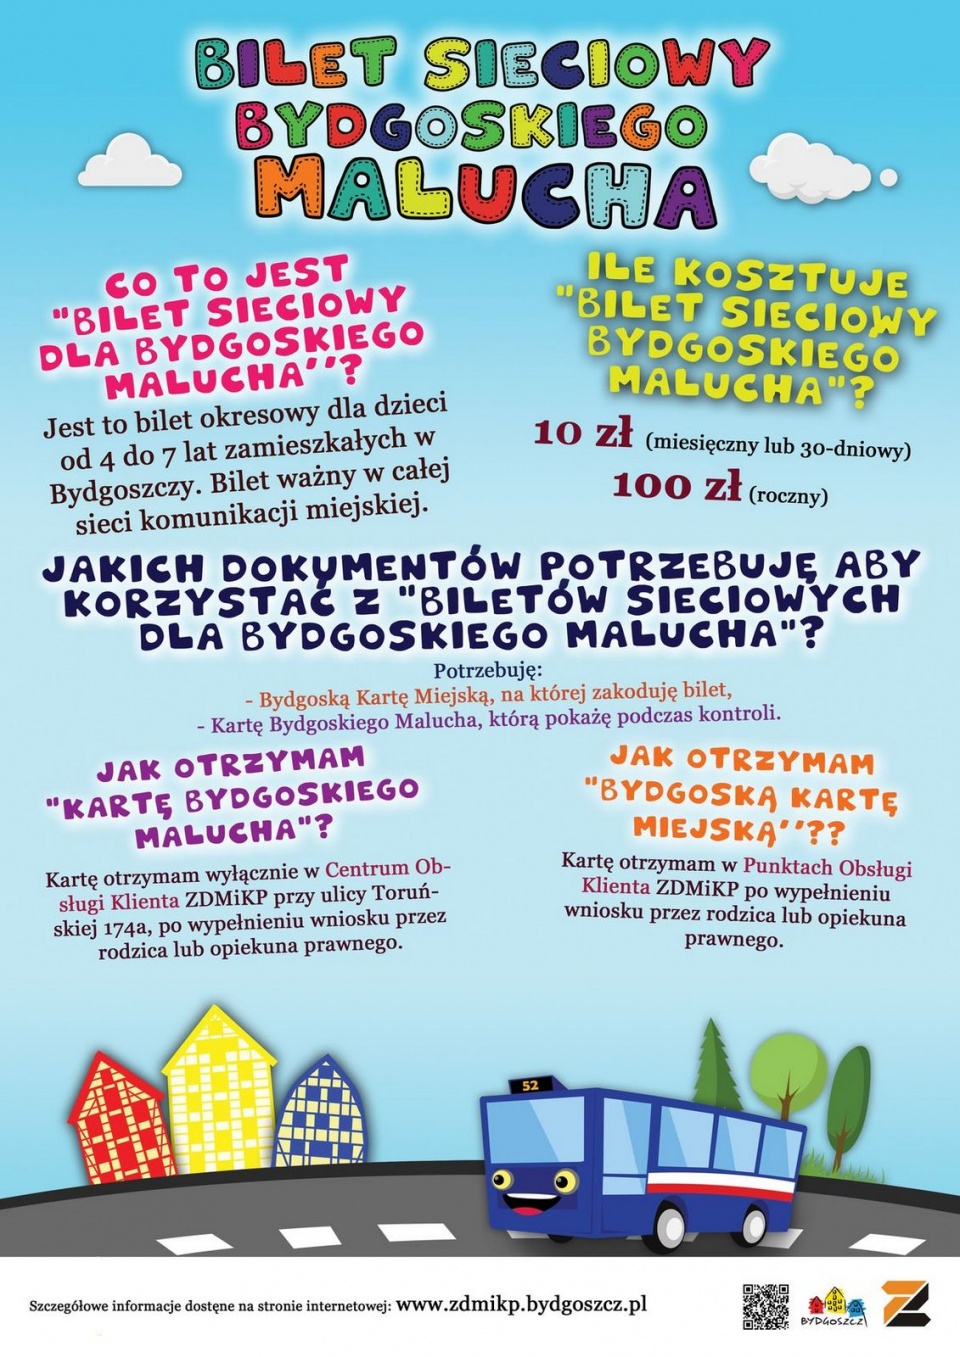 Plakat promujący Bilet sieciowy bydgoskiego malucha. Źródło: ZDMiKP